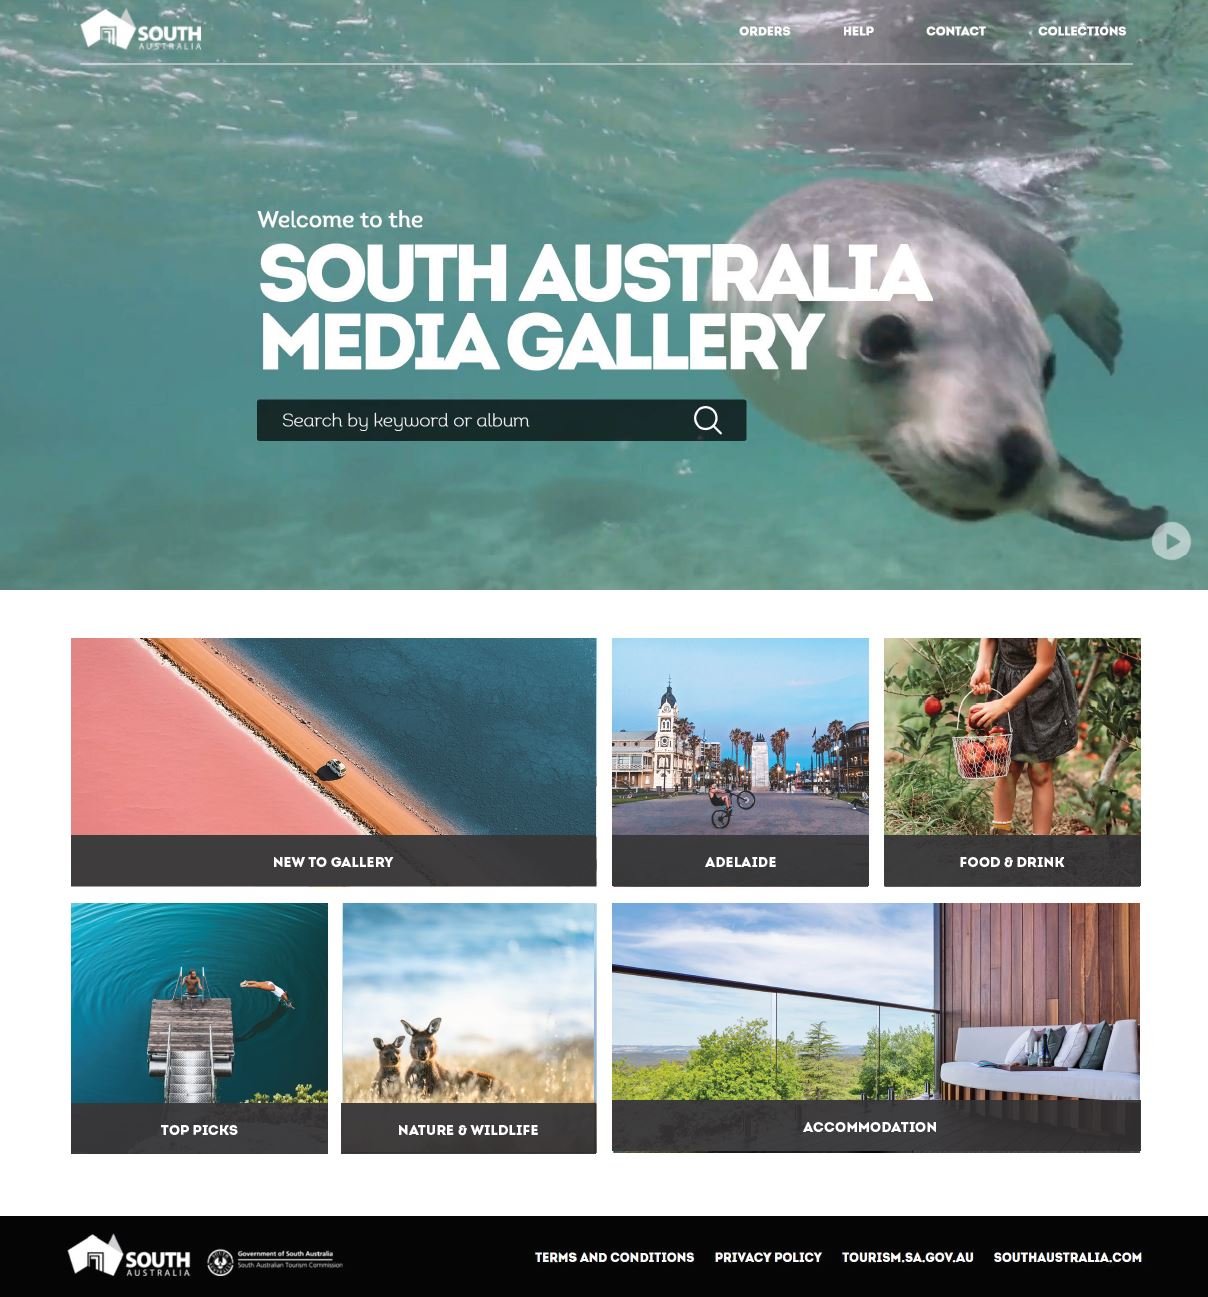 south australia tourism office melbourne